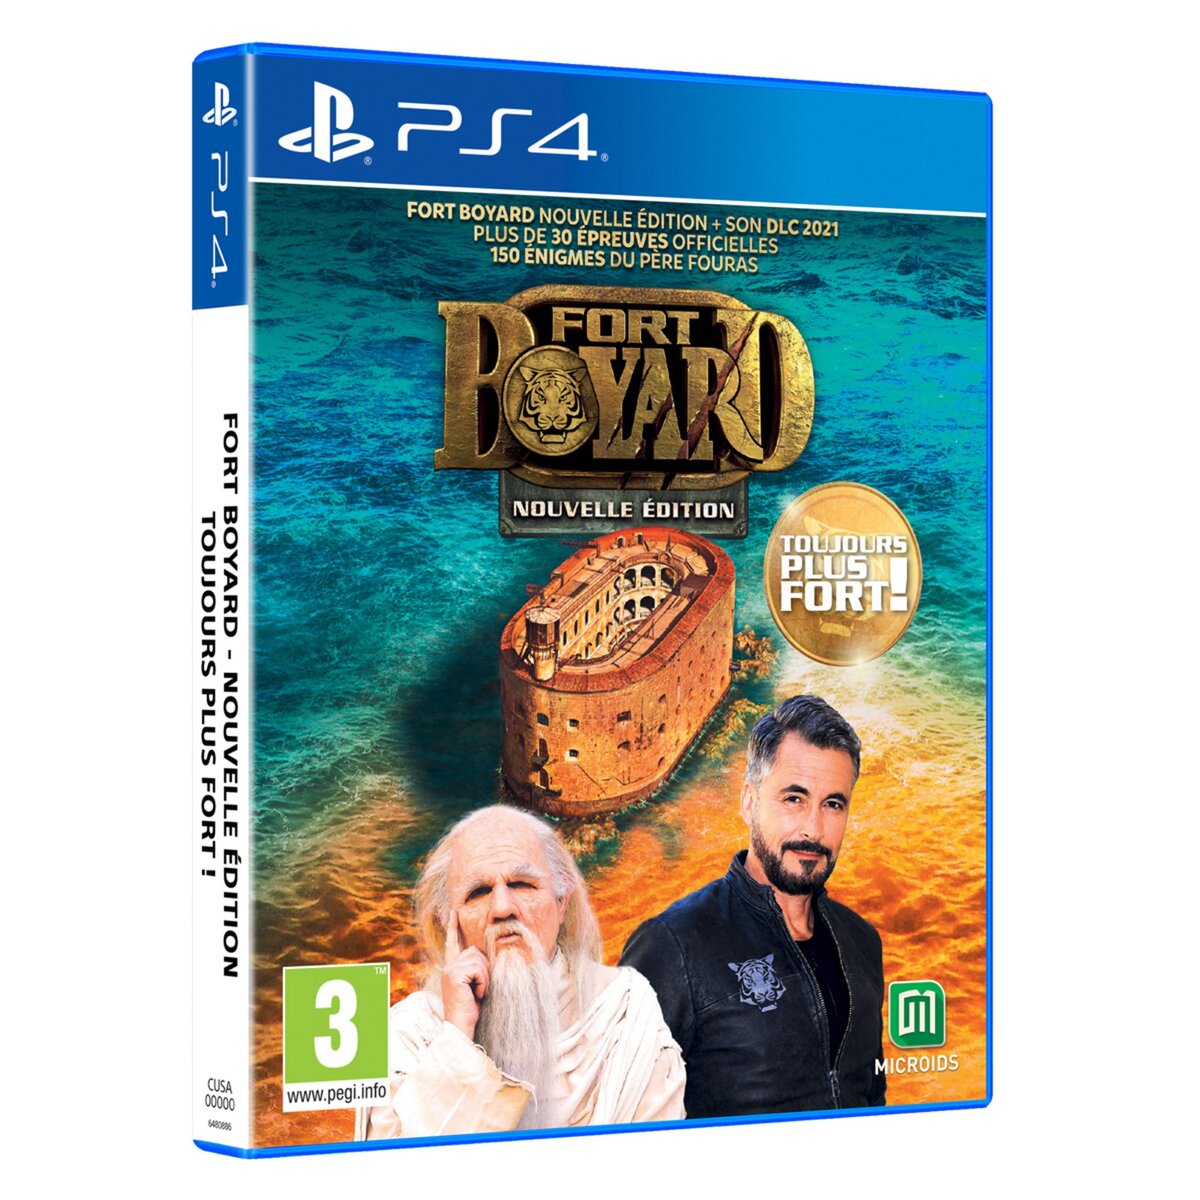 Fort Boyard : Nouvelle Edition - Toujours plus fort ! PS4